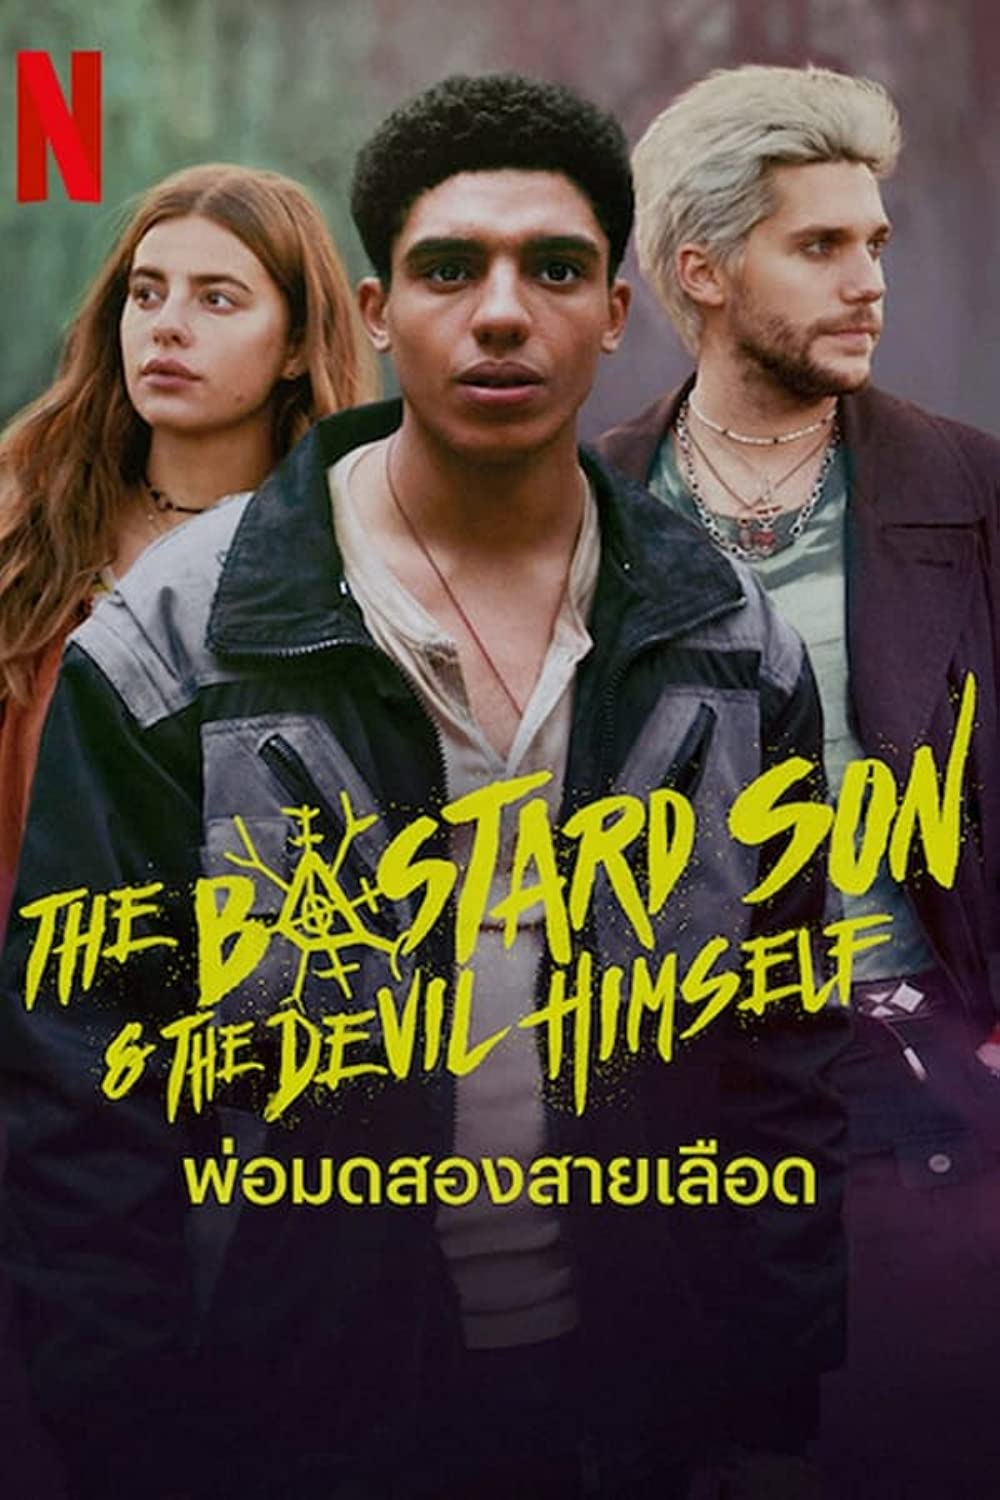 مسلسل The Bastard Son & The Devil Himself الموسم 1 الحلقة 6 مترجمة